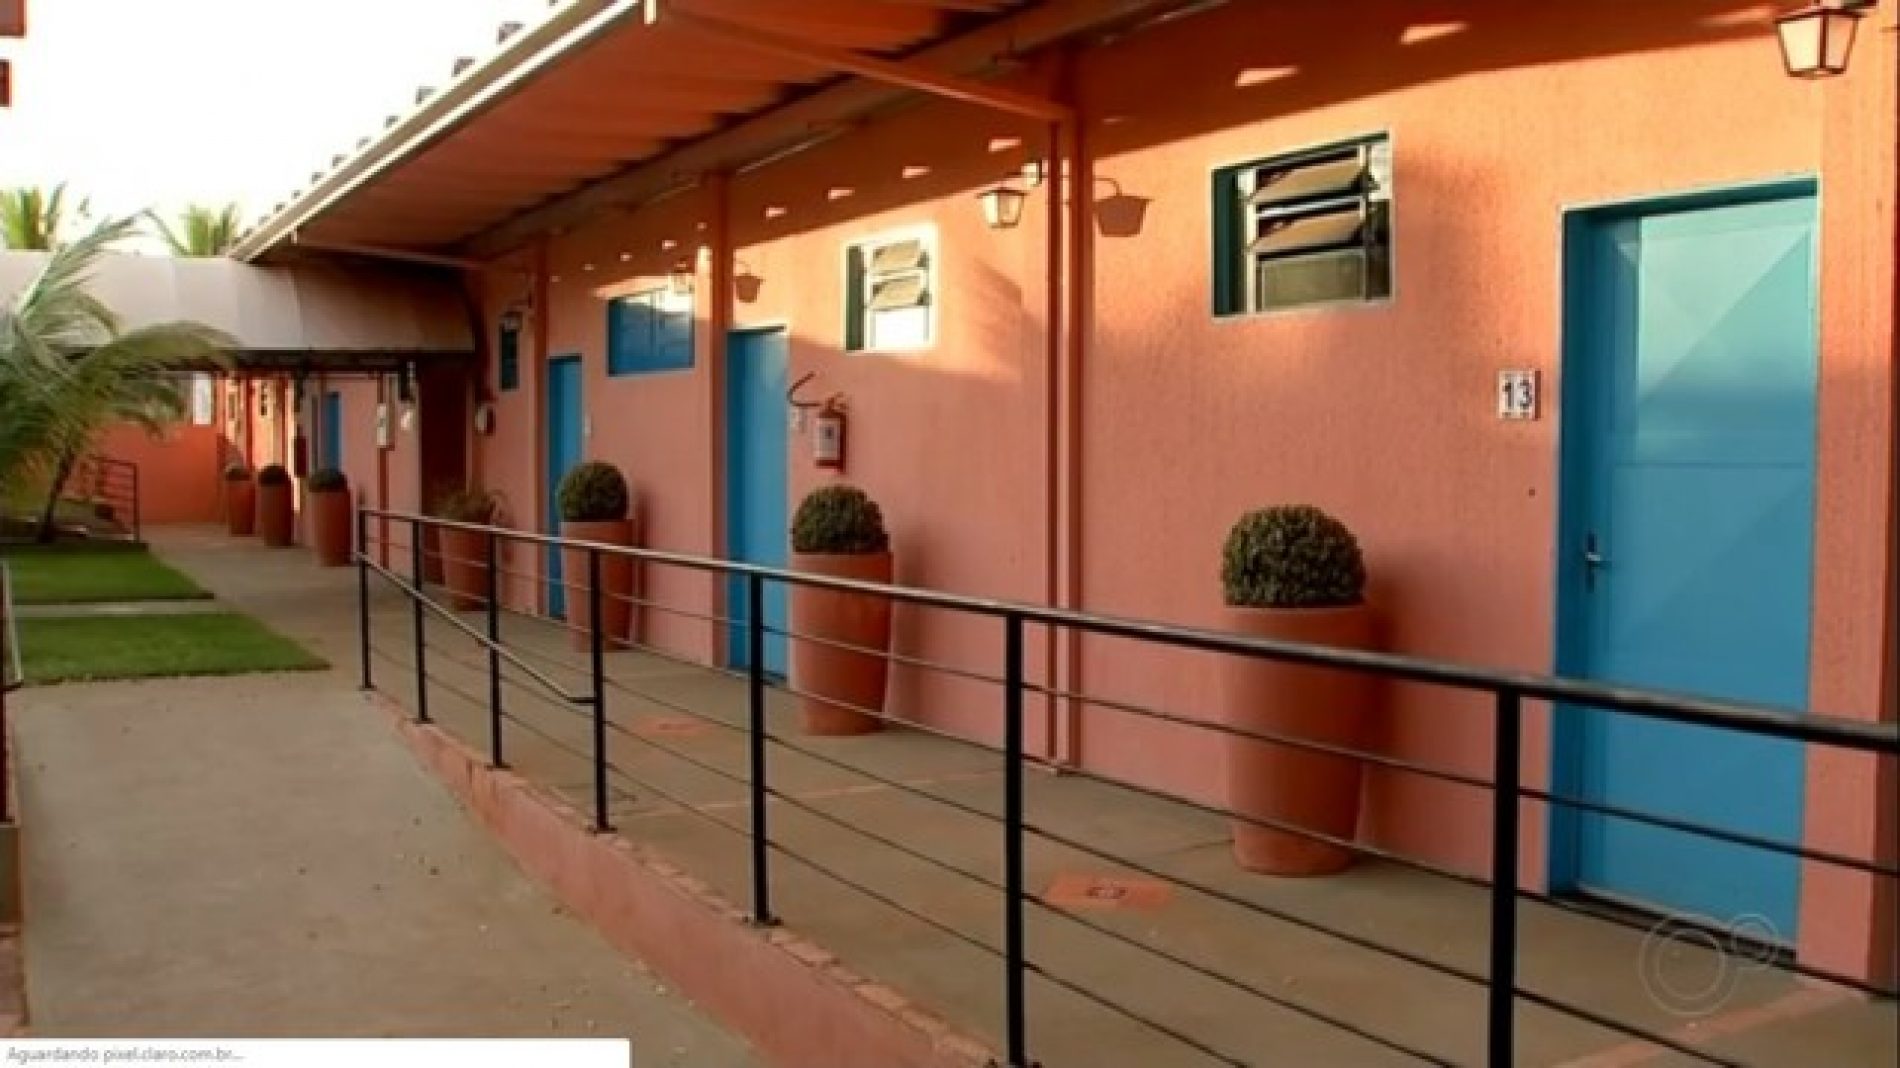 OLÍMPIA: Cidade usa hotel para dar estadia a profissionais da saúde que atuam contra a Covid-19